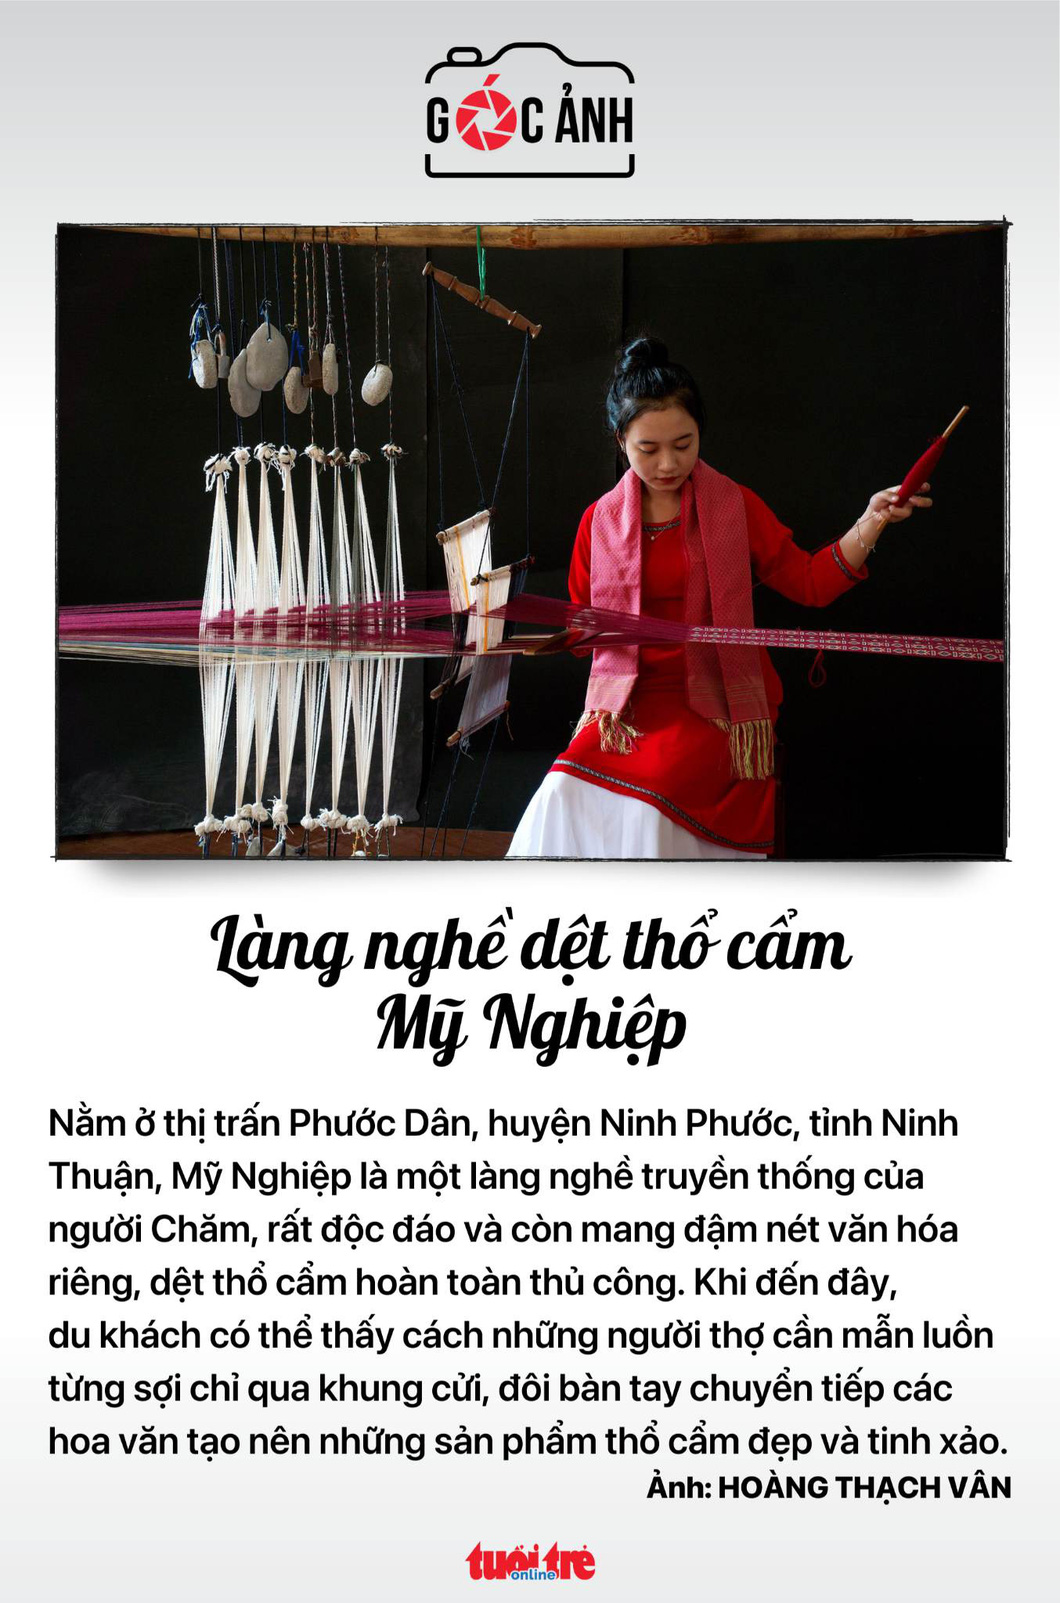 Dệt thổ cẩm tại làng nghề Mỹ Nghiệp nổi tiếng Ninh Thuận 